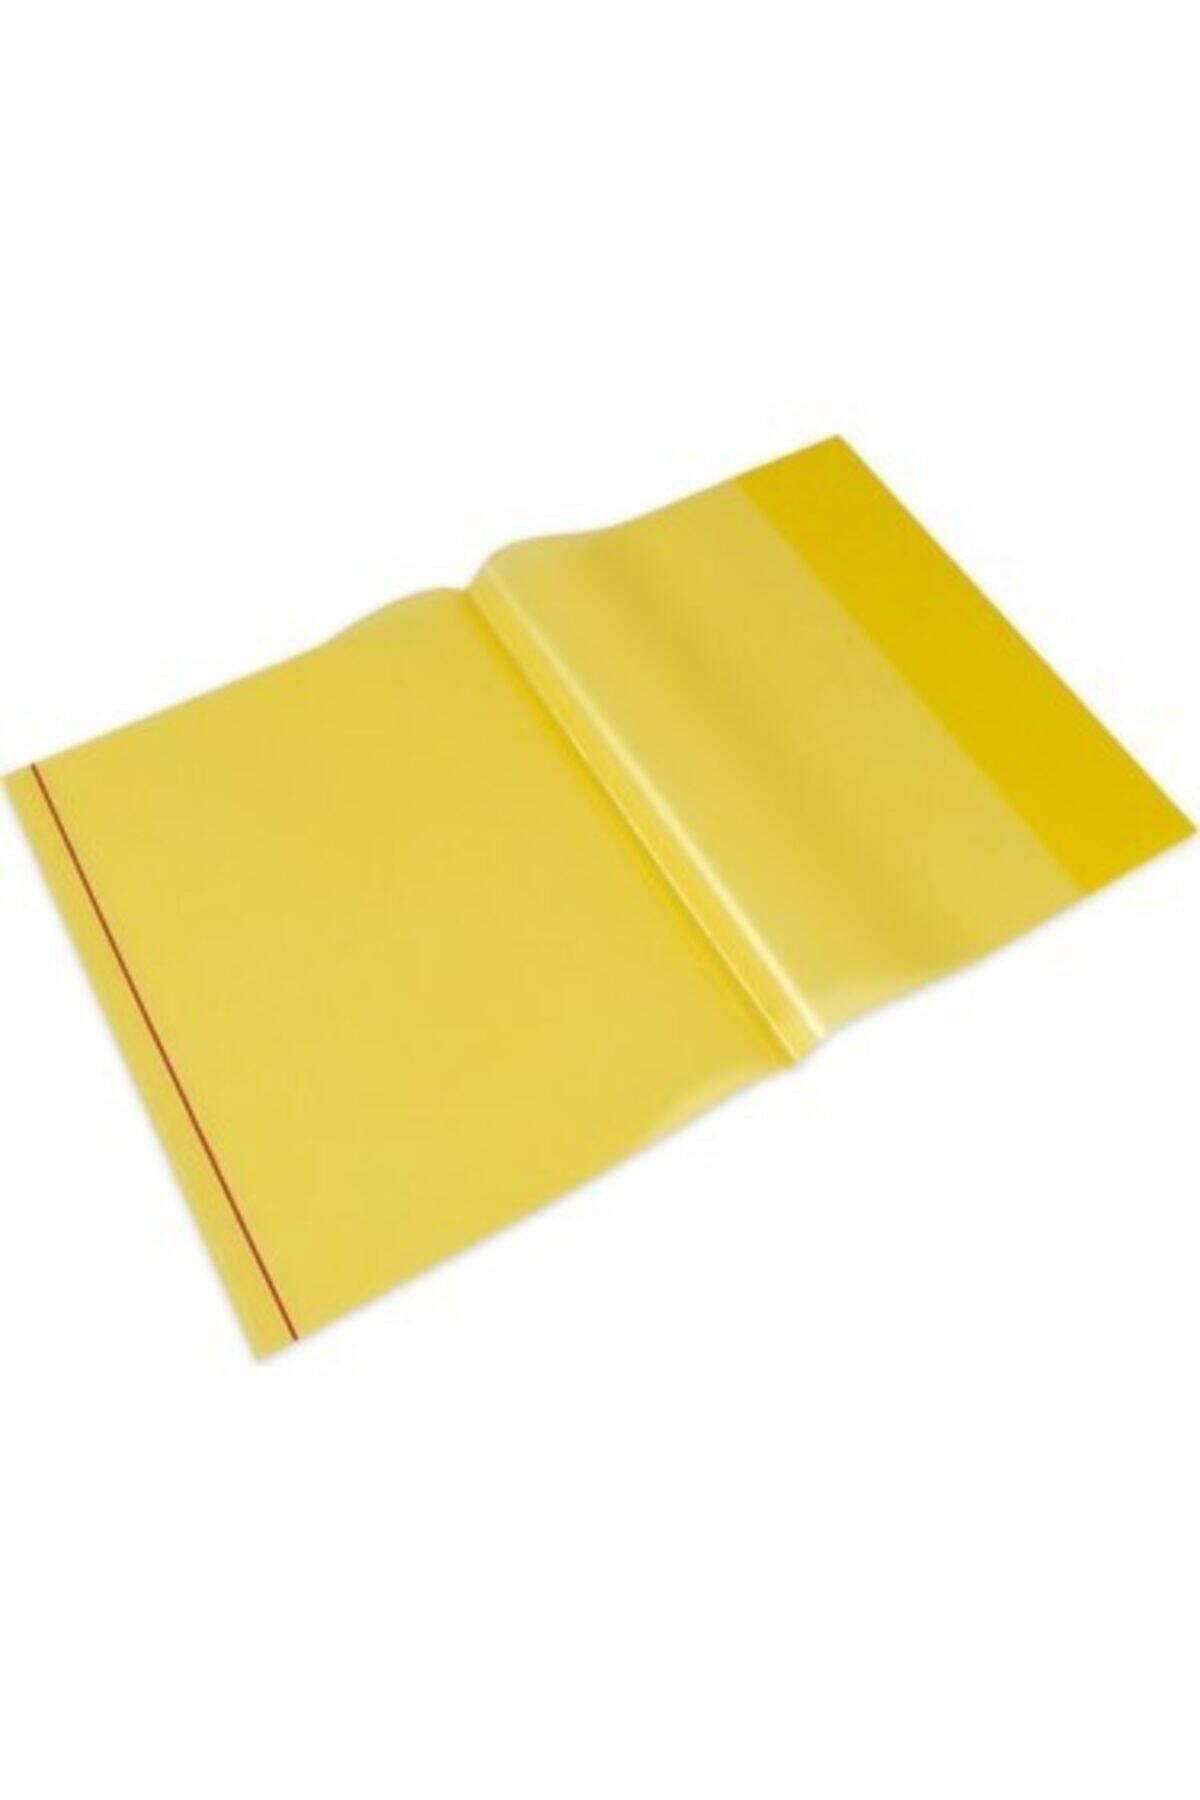 Umur Kırtasiye A4 Sarı 10lu Paket Geçmeli Yapışkanlı Hazır Kitap Kabı